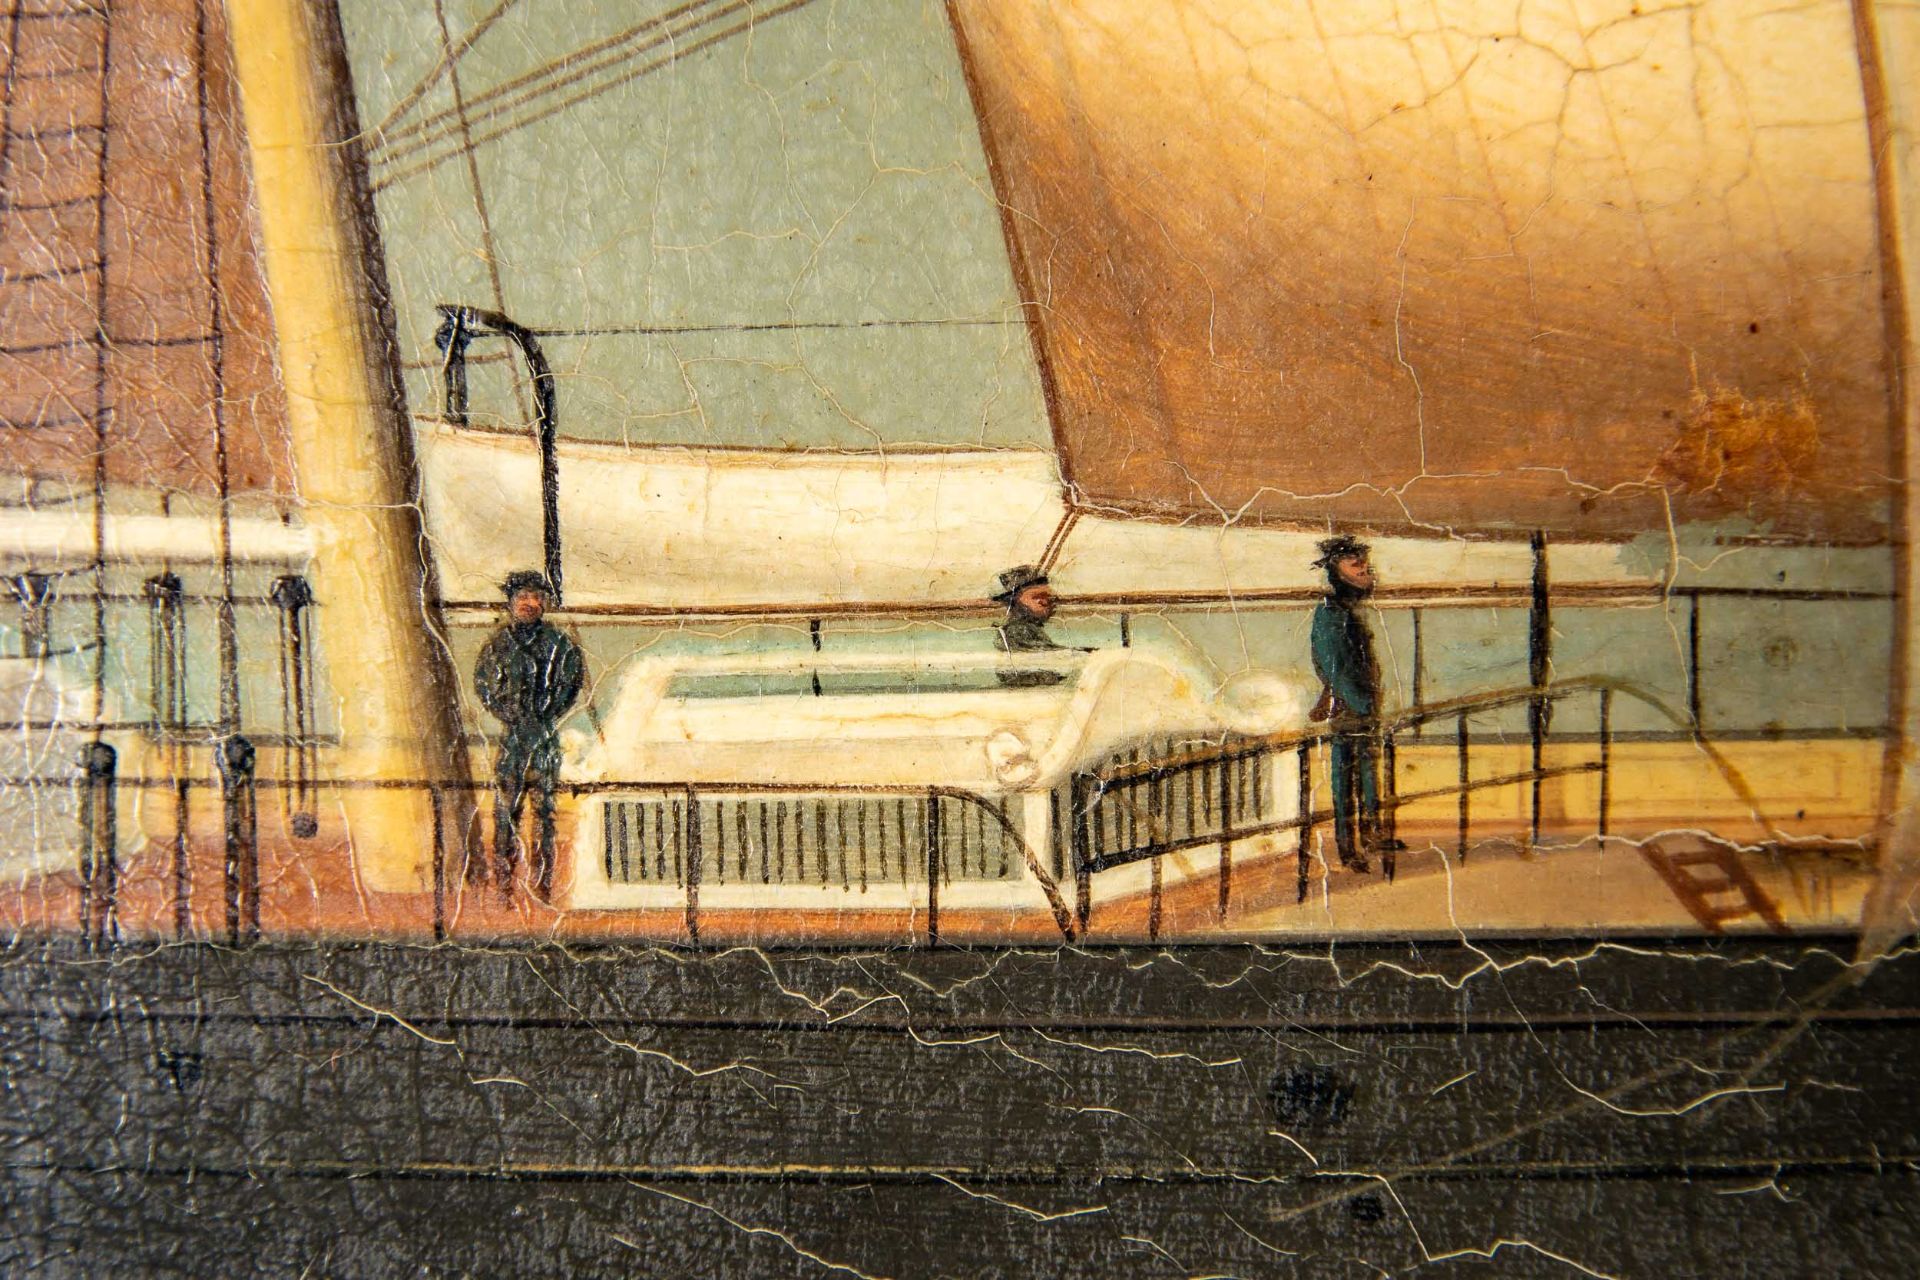 Kapitänsbild des Vollschiffes "Industrie" (1872 in Holland gebaut), qualitativ hochwertiges Gemälde - Image 15 of 24